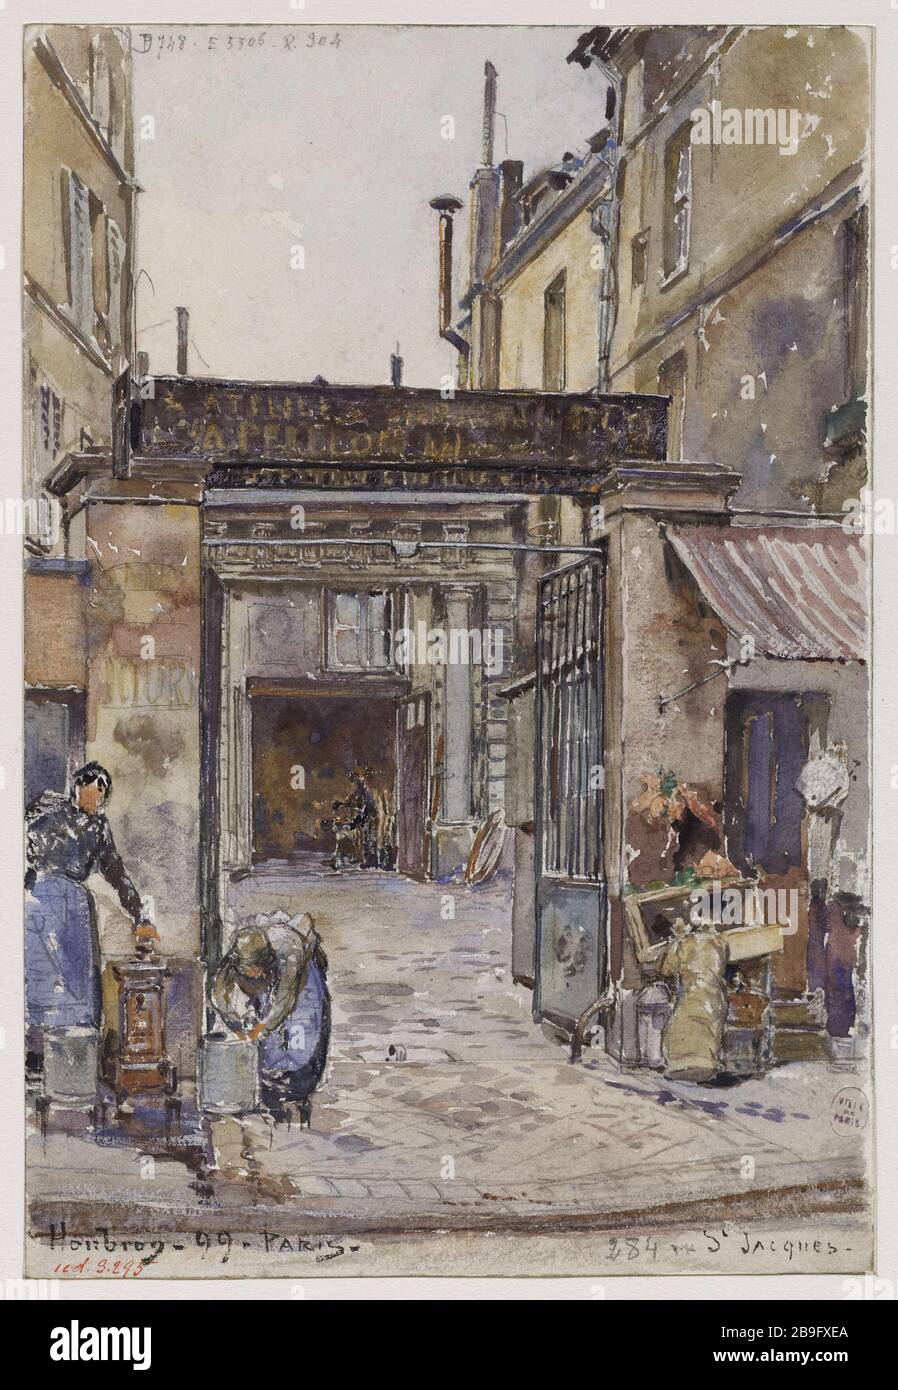 284 RUE ST JACQUES Frédéric-Anatole houbron (1851-1908). '284 rue St Jacques'. Aquarelle, 1899. París, musée Carnavalet. Foto de stock